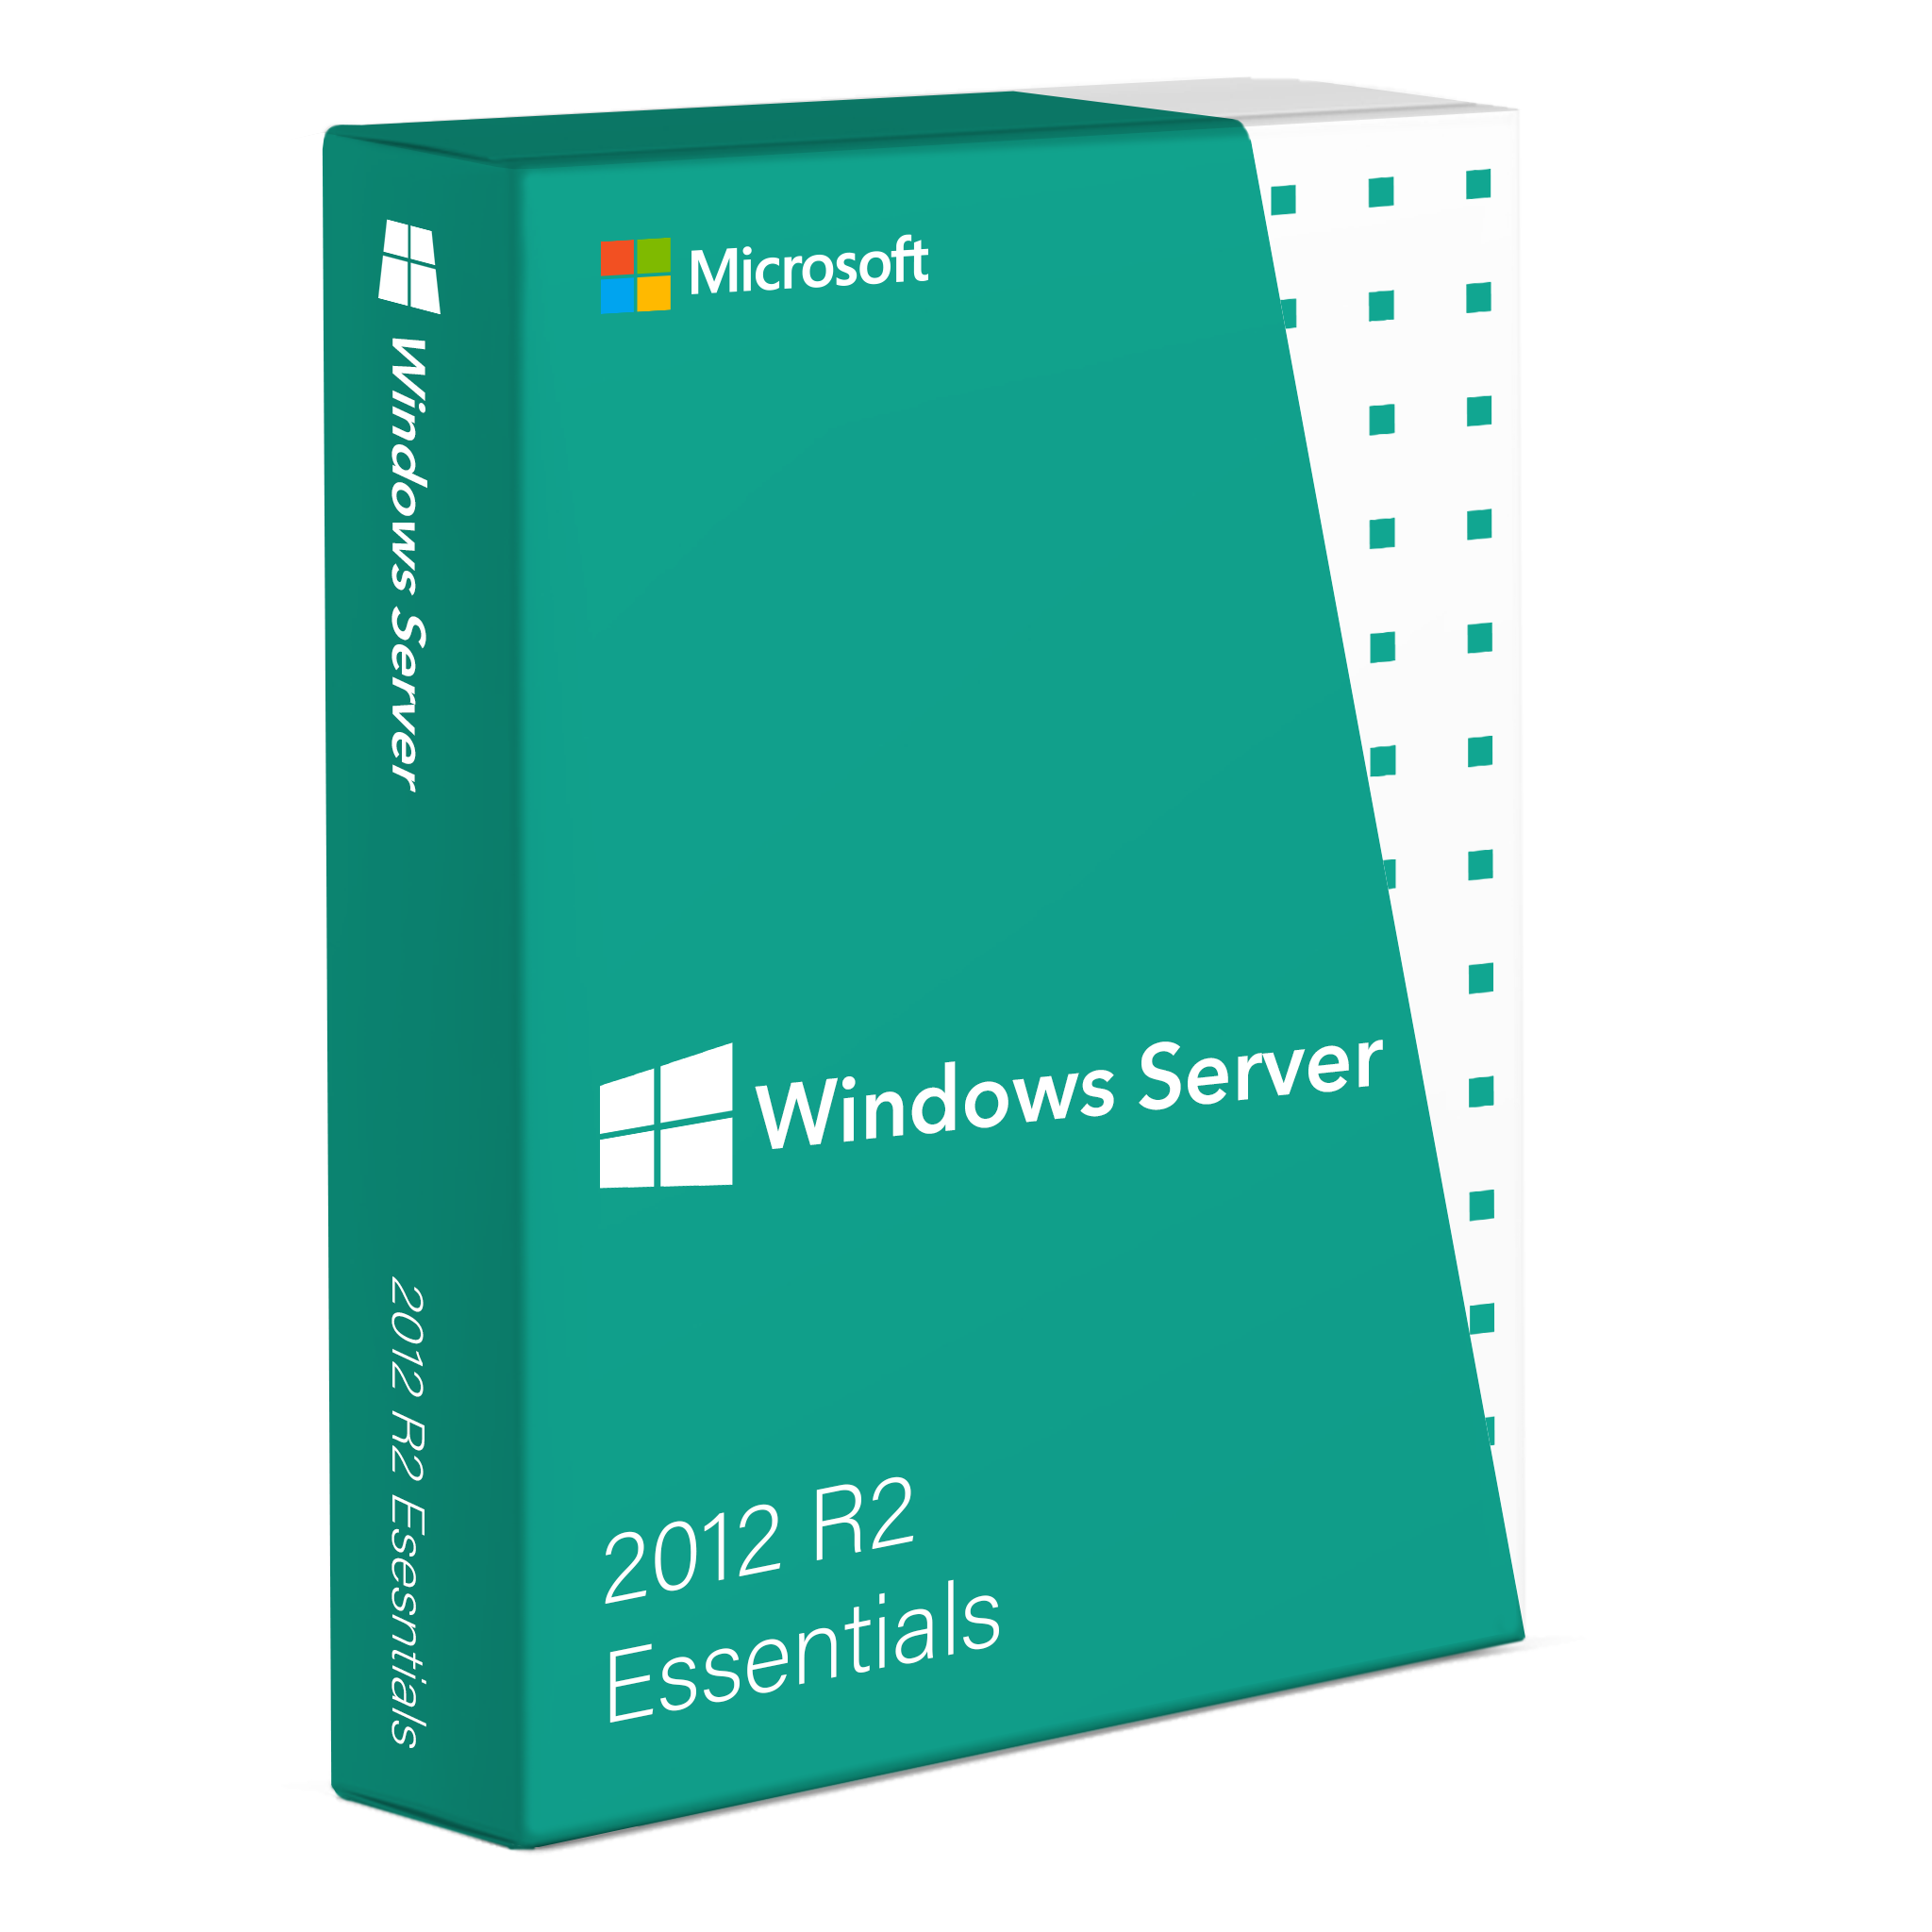 Conceptos básicos de Windows Server 2012 R2